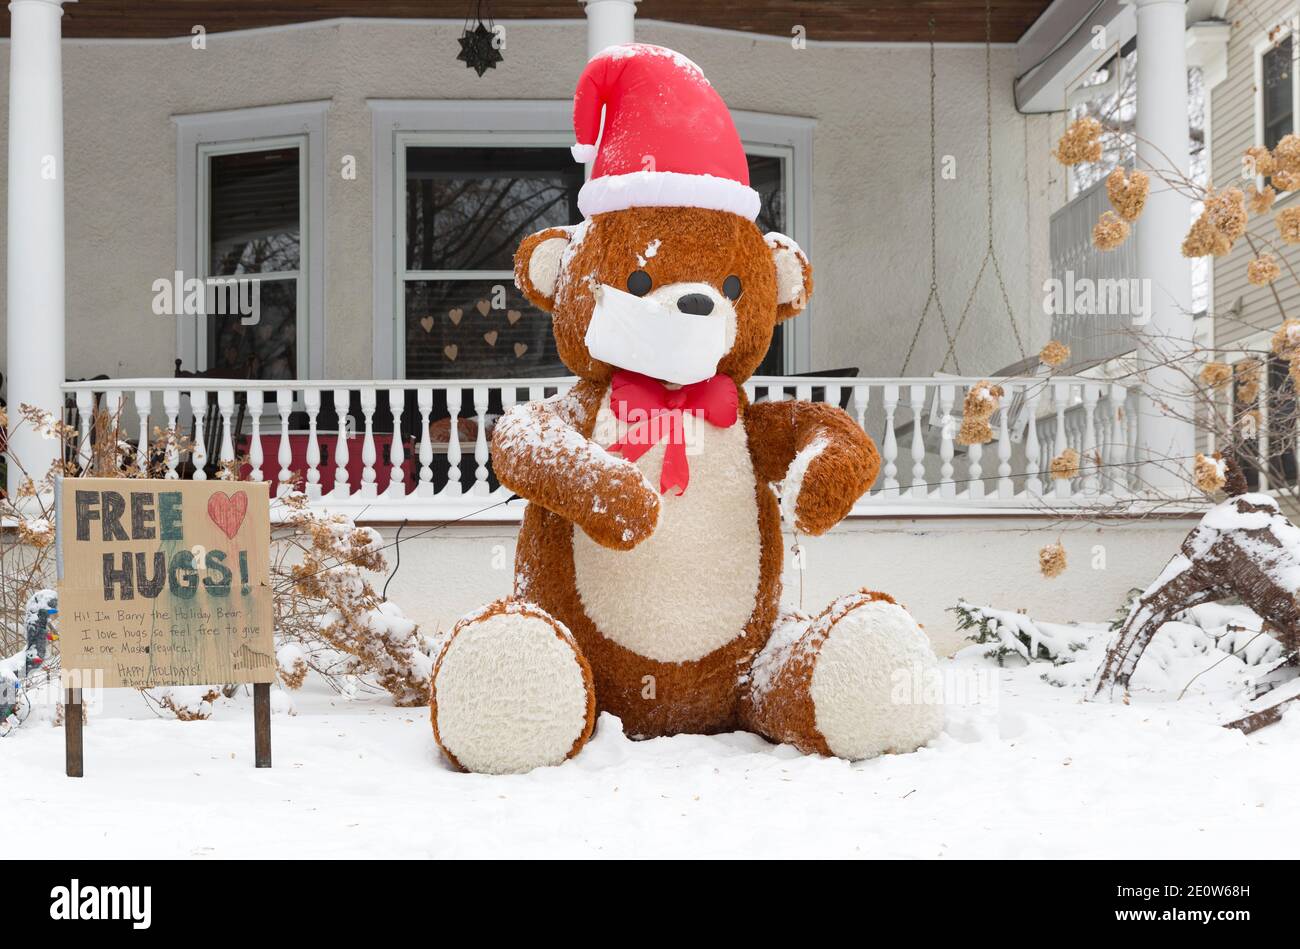 Une exposition de cour de Noël avec une grande publicité d'ours en peluche Des hugs libres pendant la pandémie Covid-19 de 2020 Banque D'Images